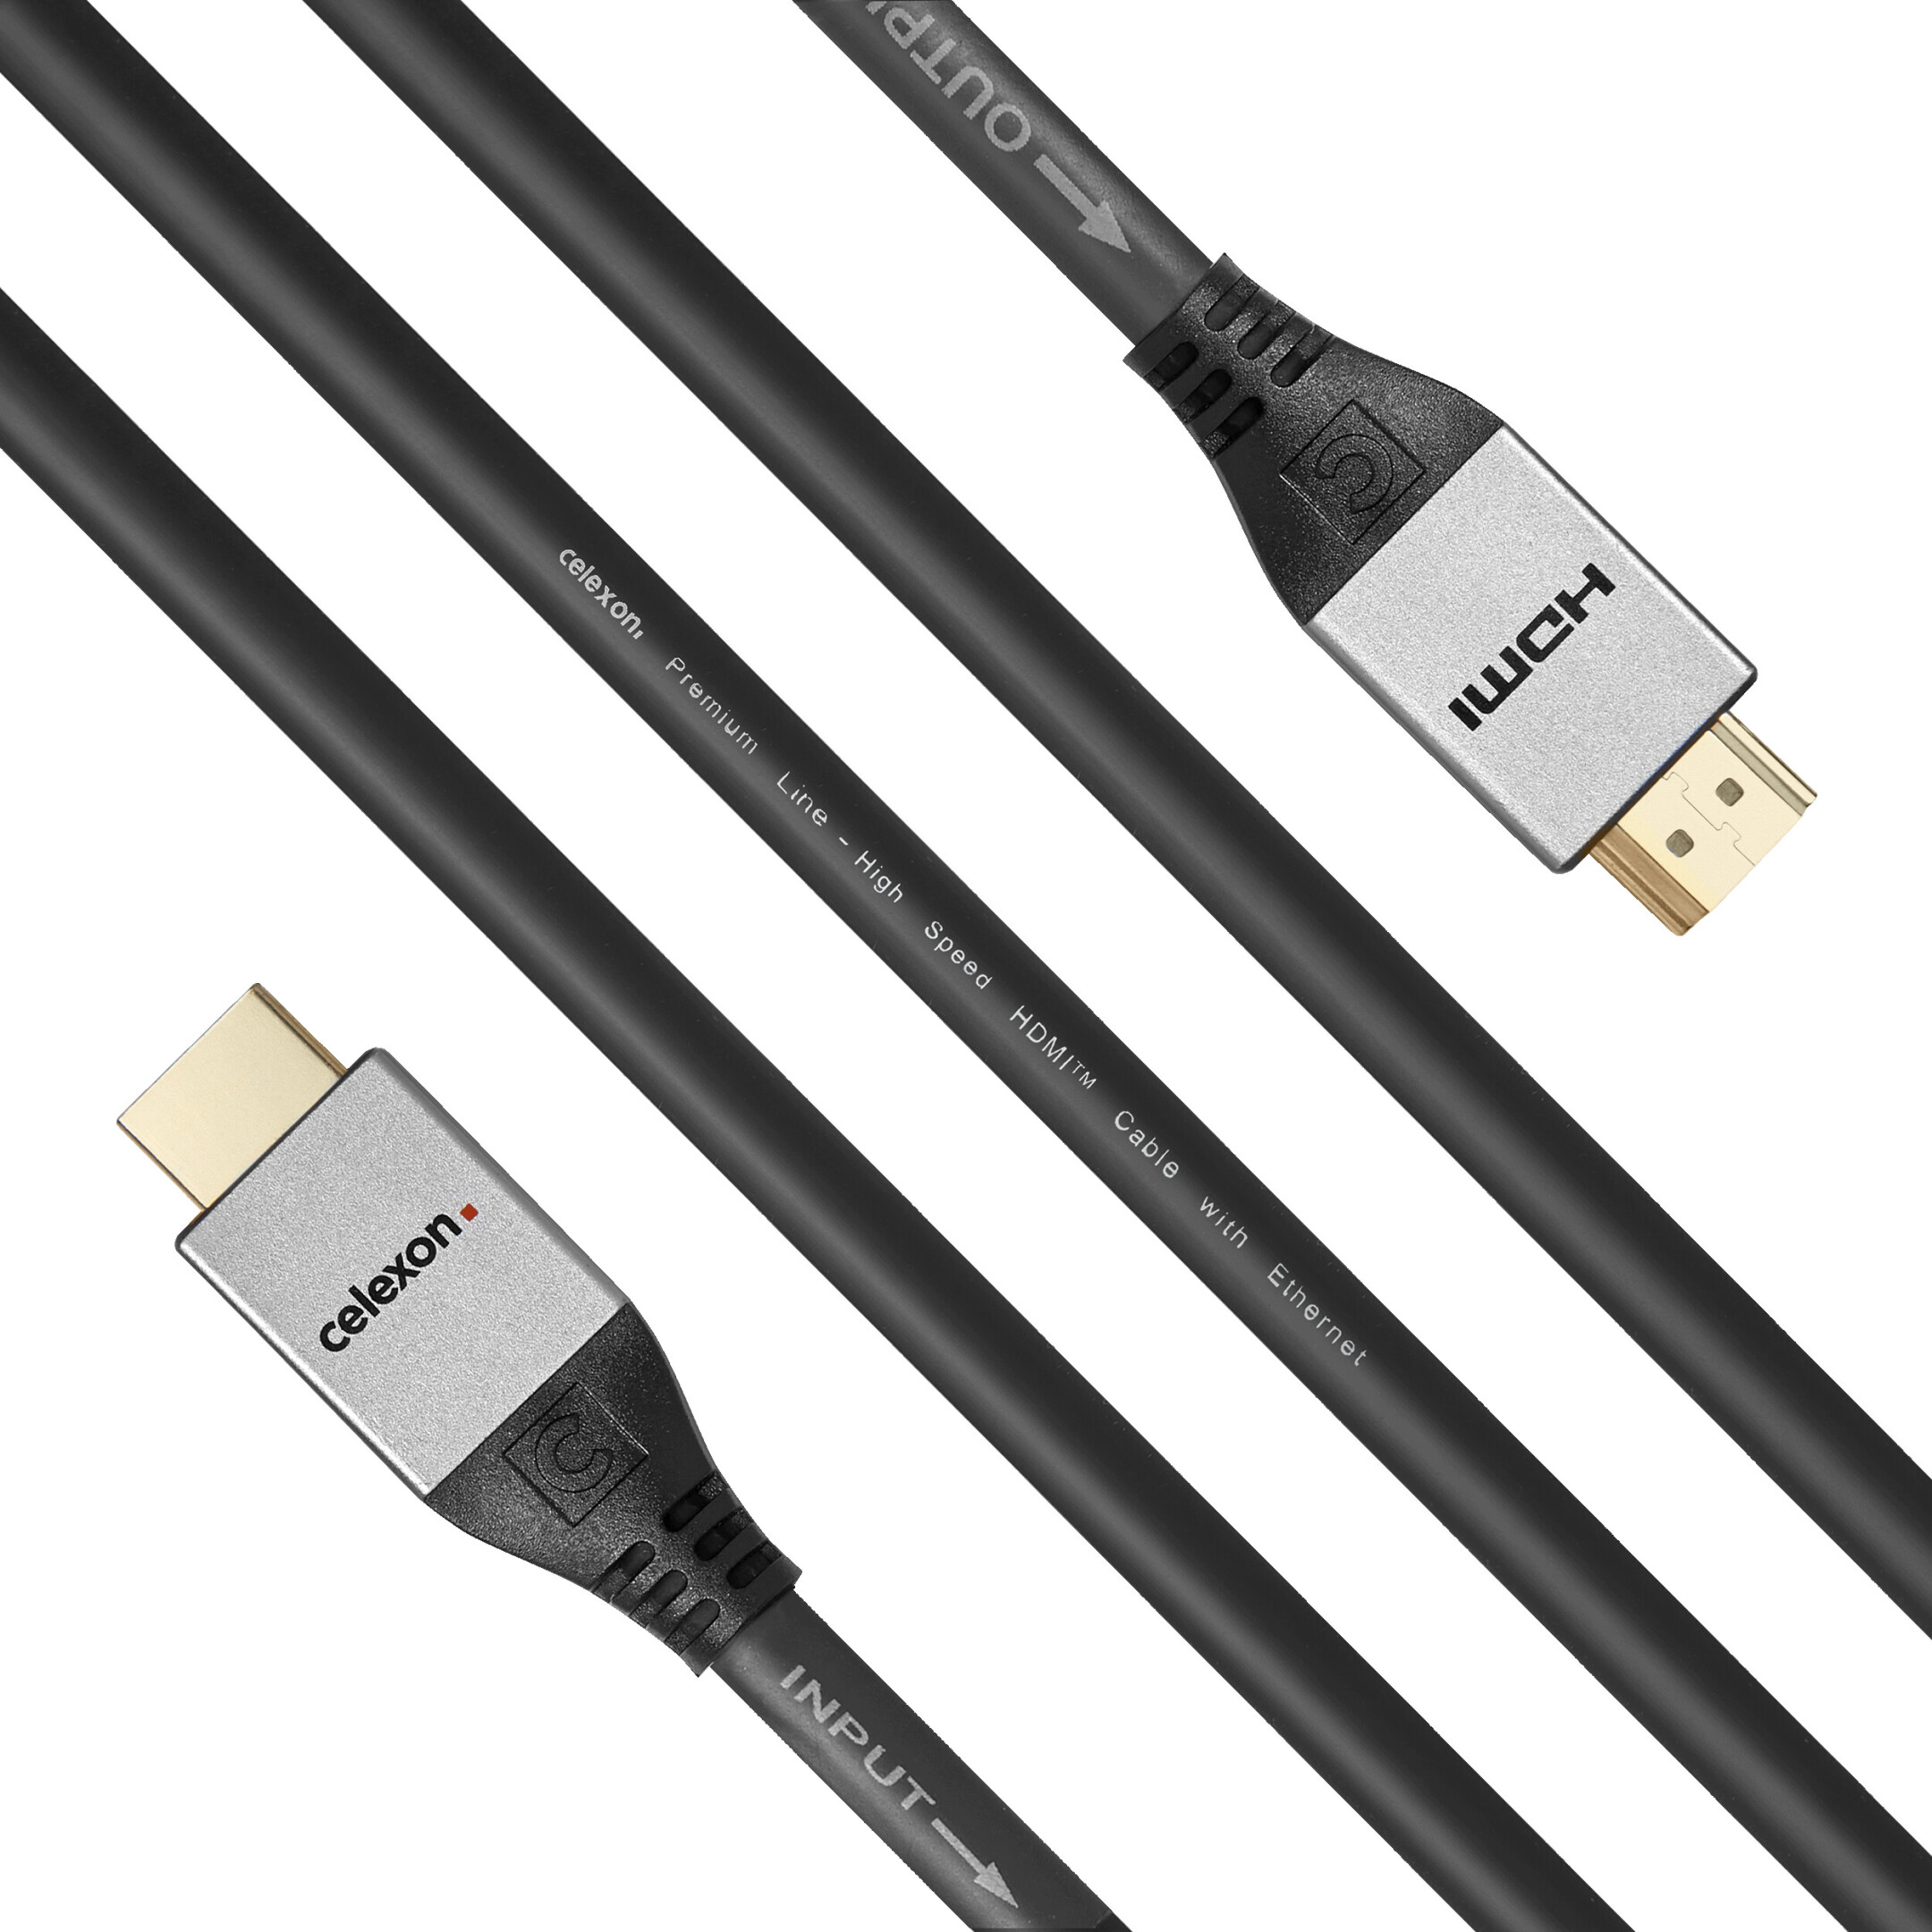 celexon-actieve-HDMI-kabel-met-Ethernet-2-0a-b-4K-7-5m-Professional